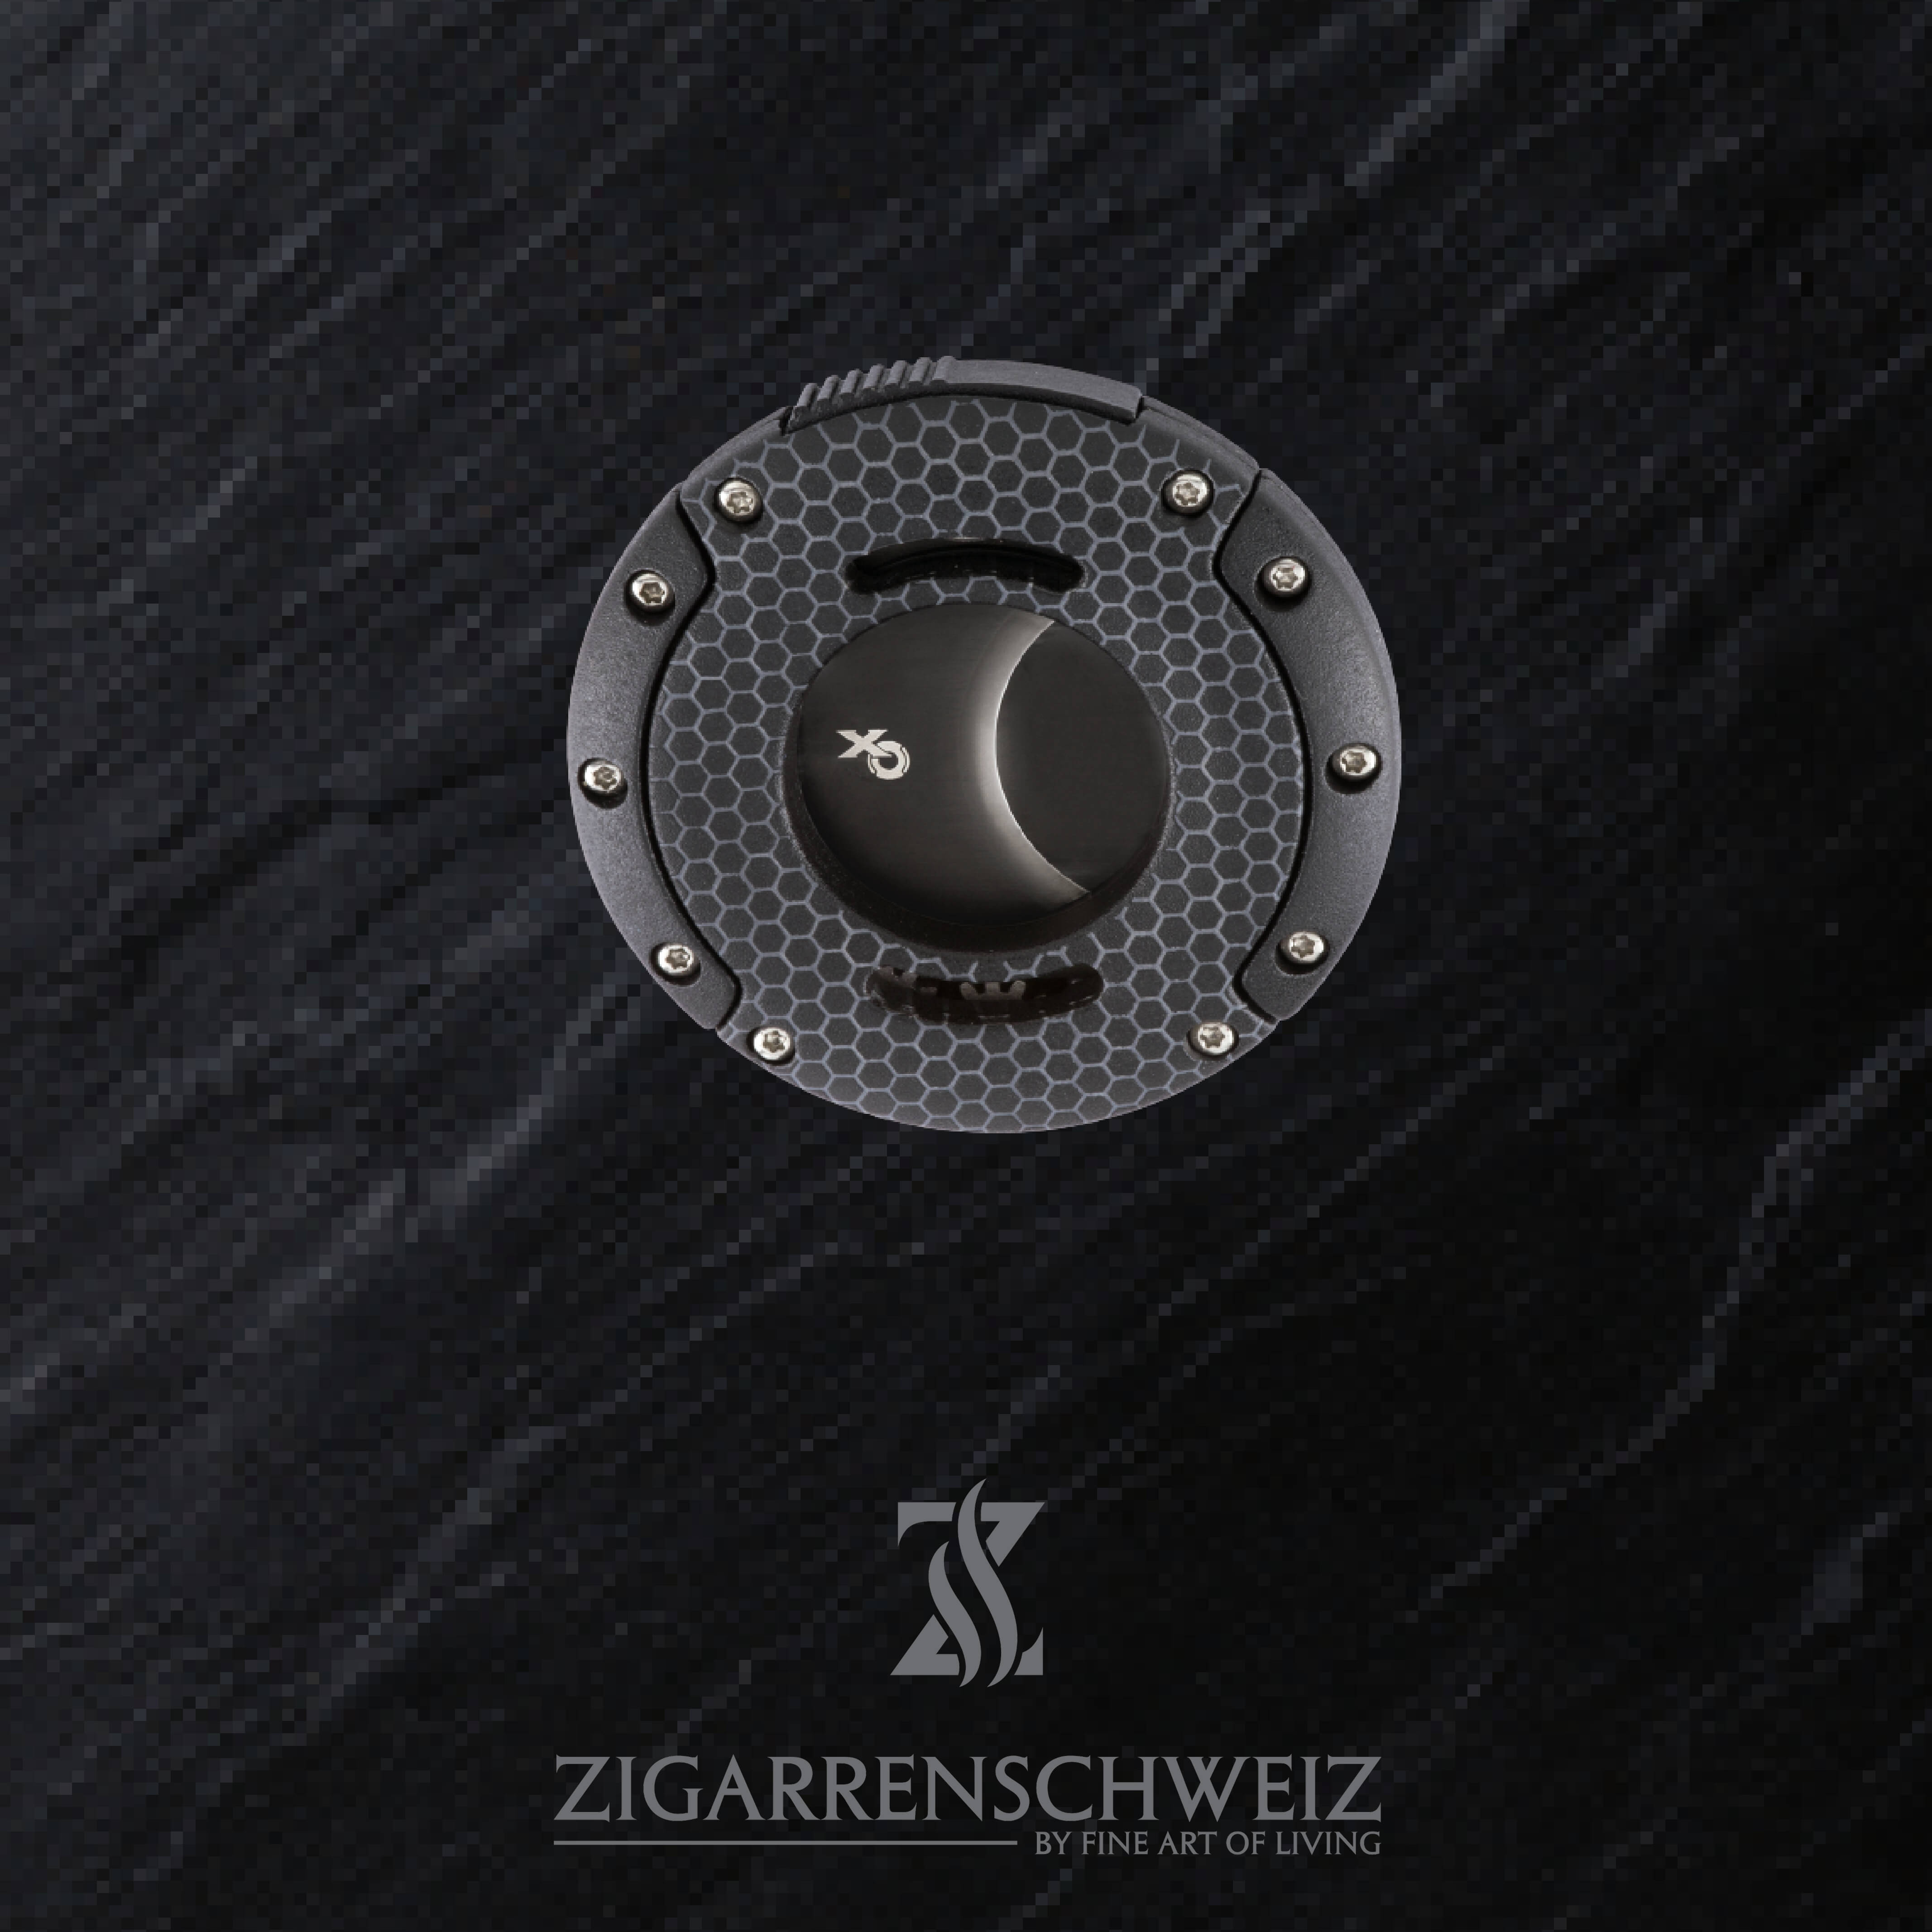 Xikar XO Zigarren Cutter, Farbe Gehäuse: Schwarz mit Honigwaben Optik, Farbe Klingen: Schwarz, geschlossen